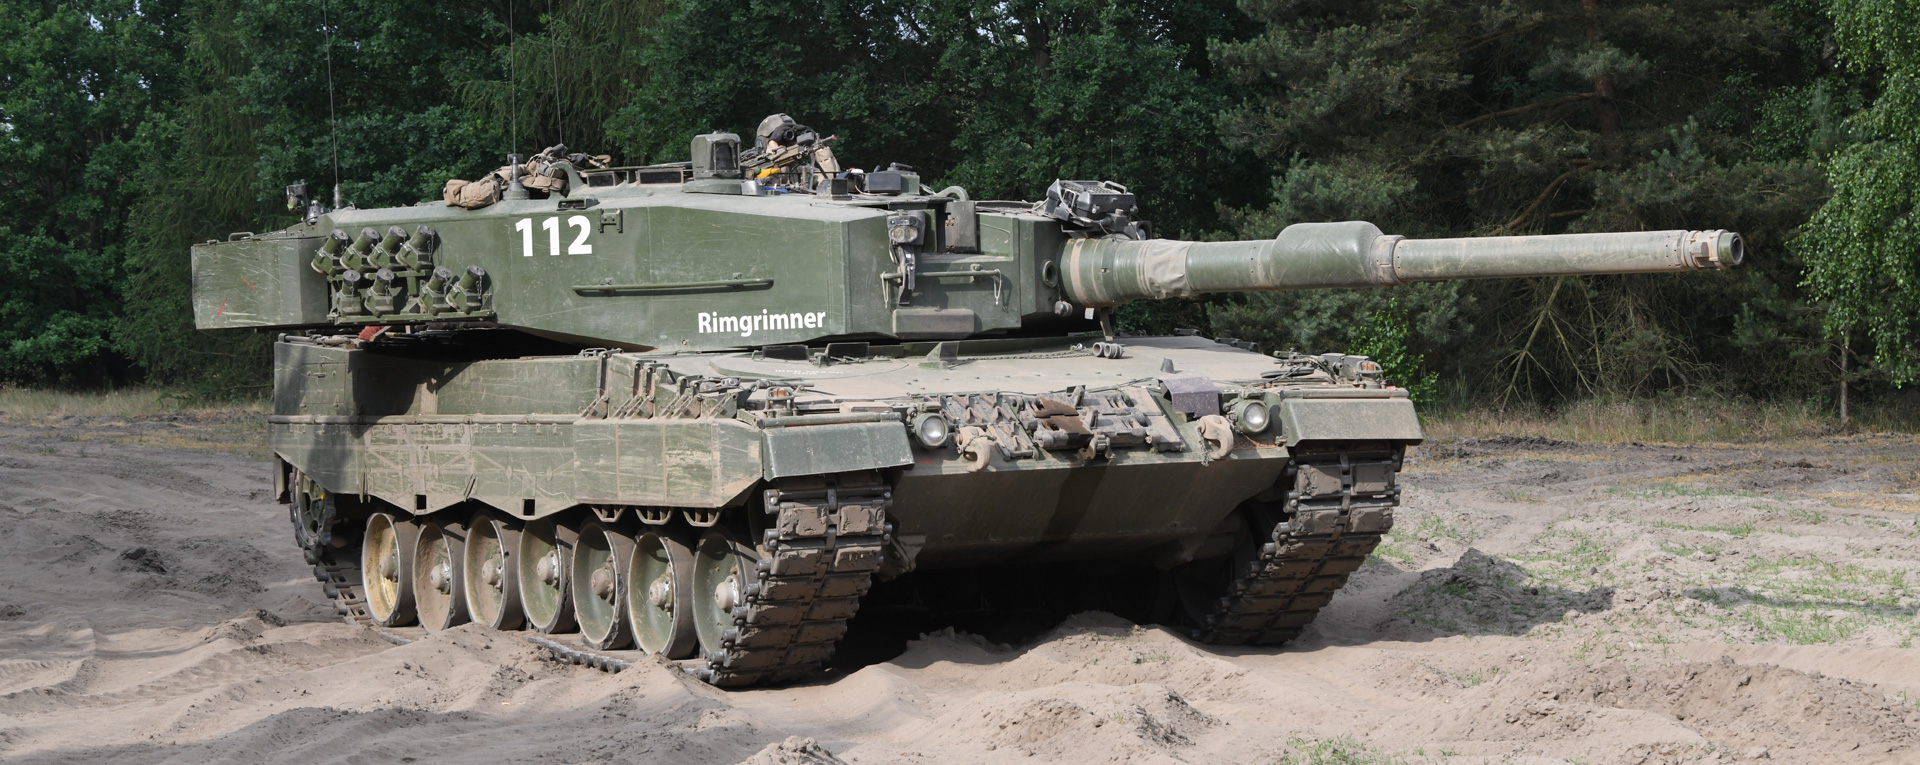 KPz Leopard 2 A4